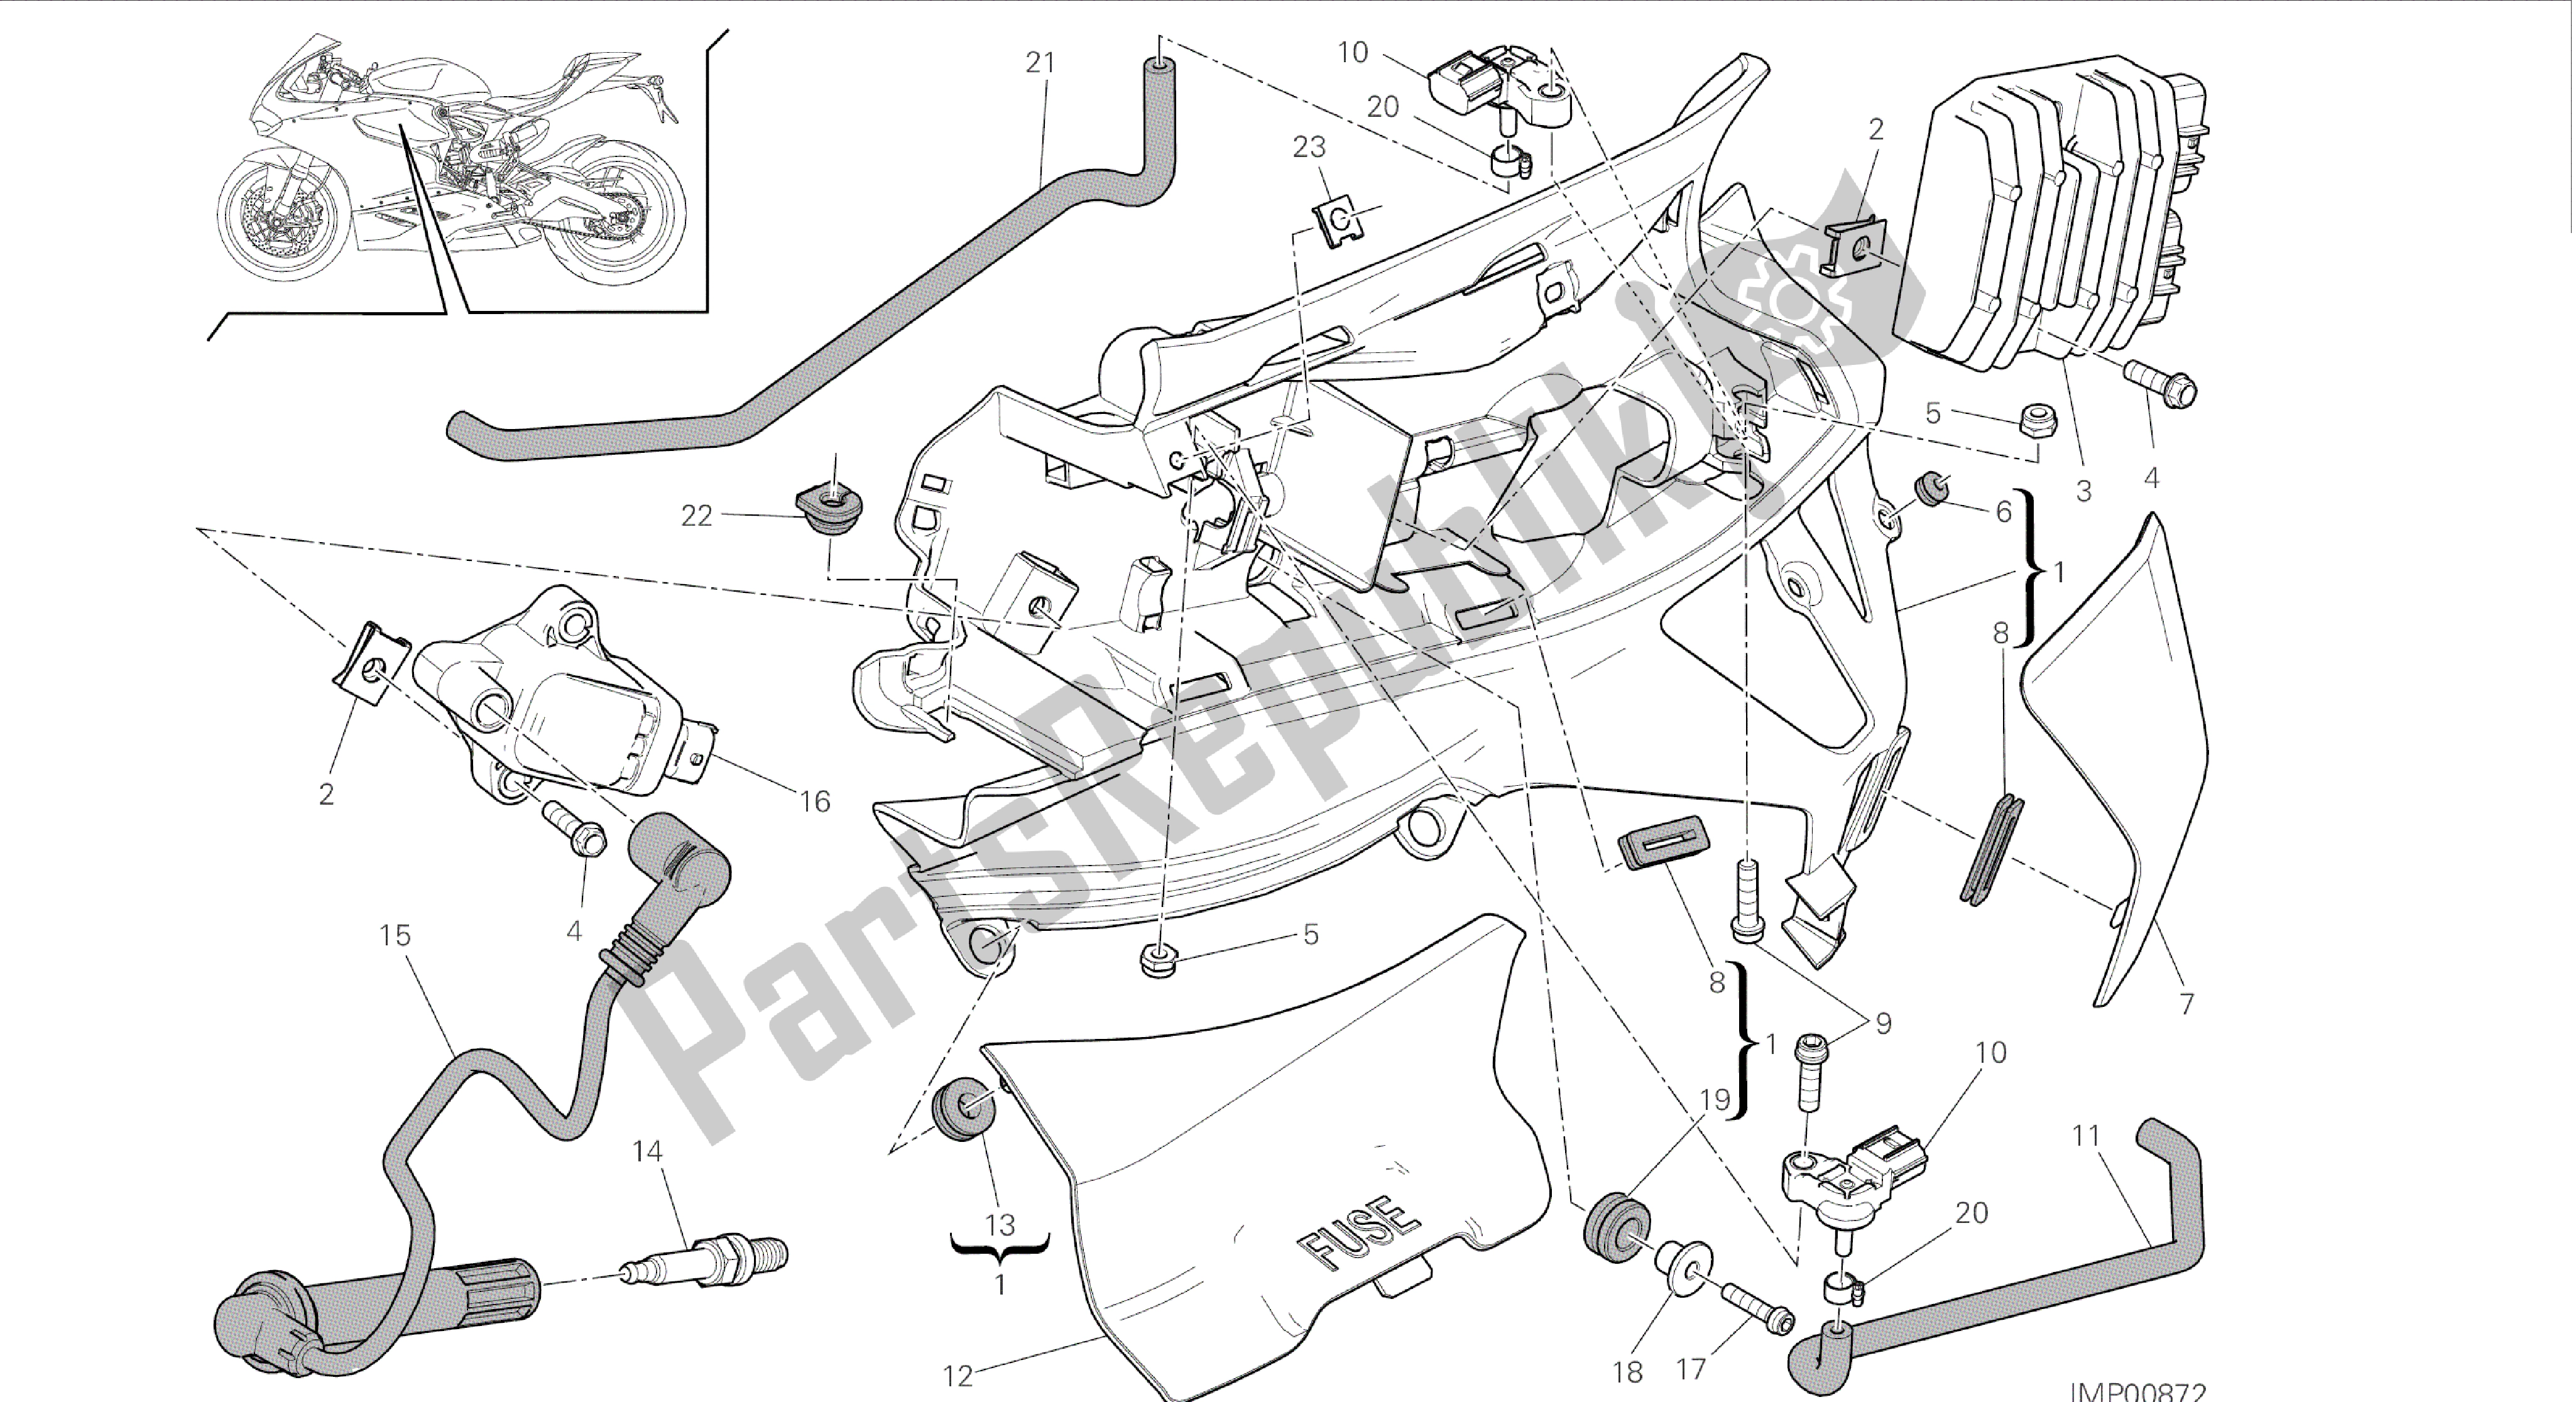 Alle onderdelen voor de Tekening 018 - Impianto Elettrico Sinistro [mod: 899 Abs, 899 Aws] Groep Elektrisch van de Ducati Panigale 899 2015